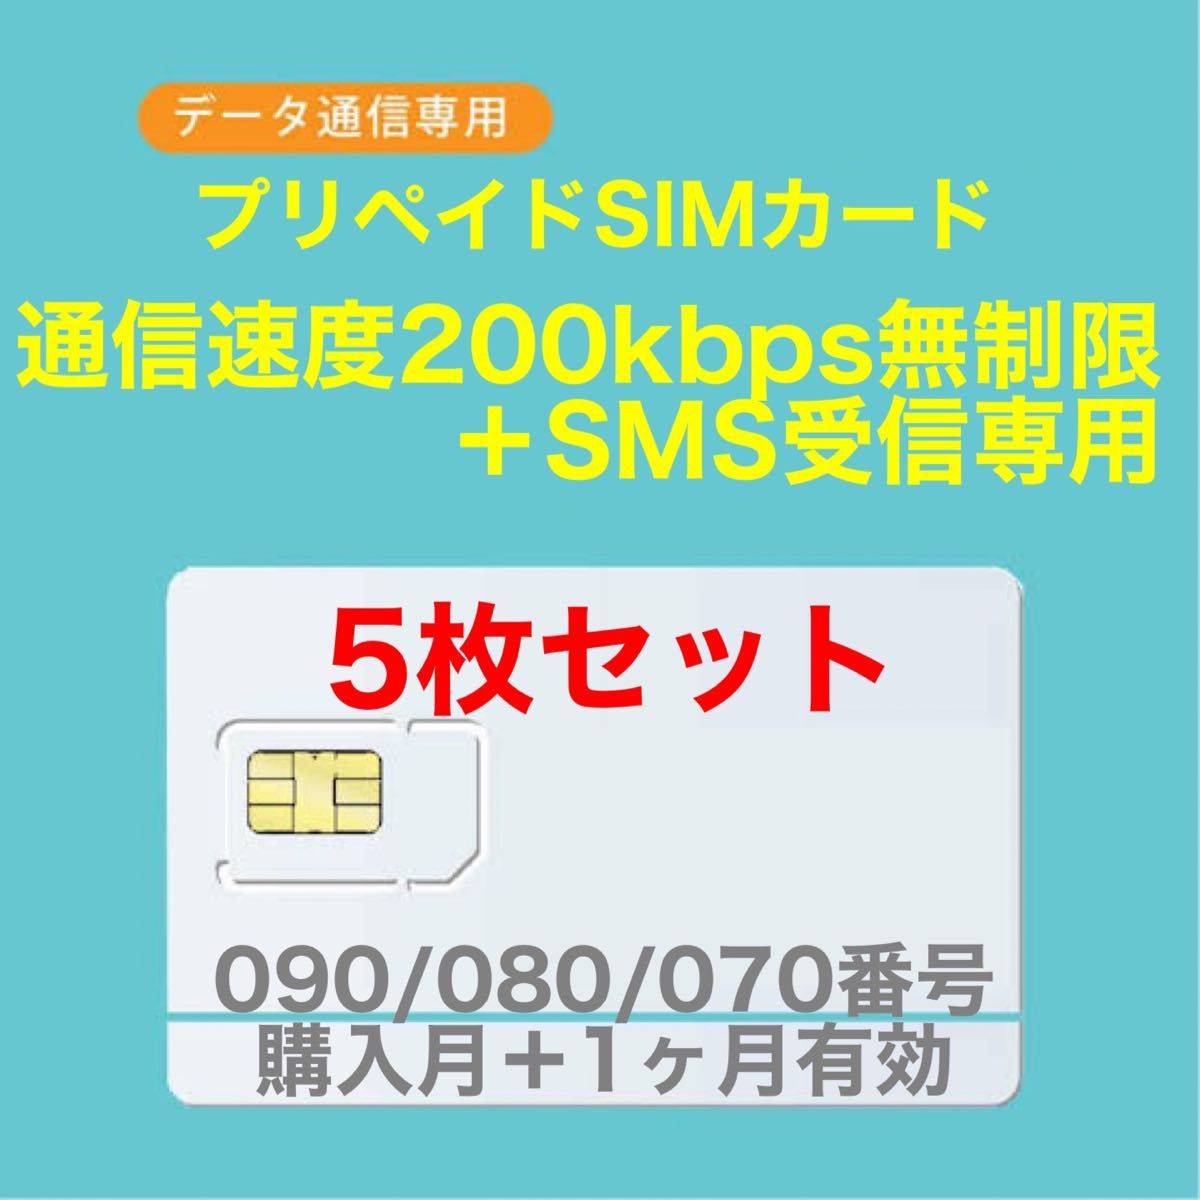 5枚セット)SoftBank プリペイドSIM データ通信 1GB/月SMS受信可能